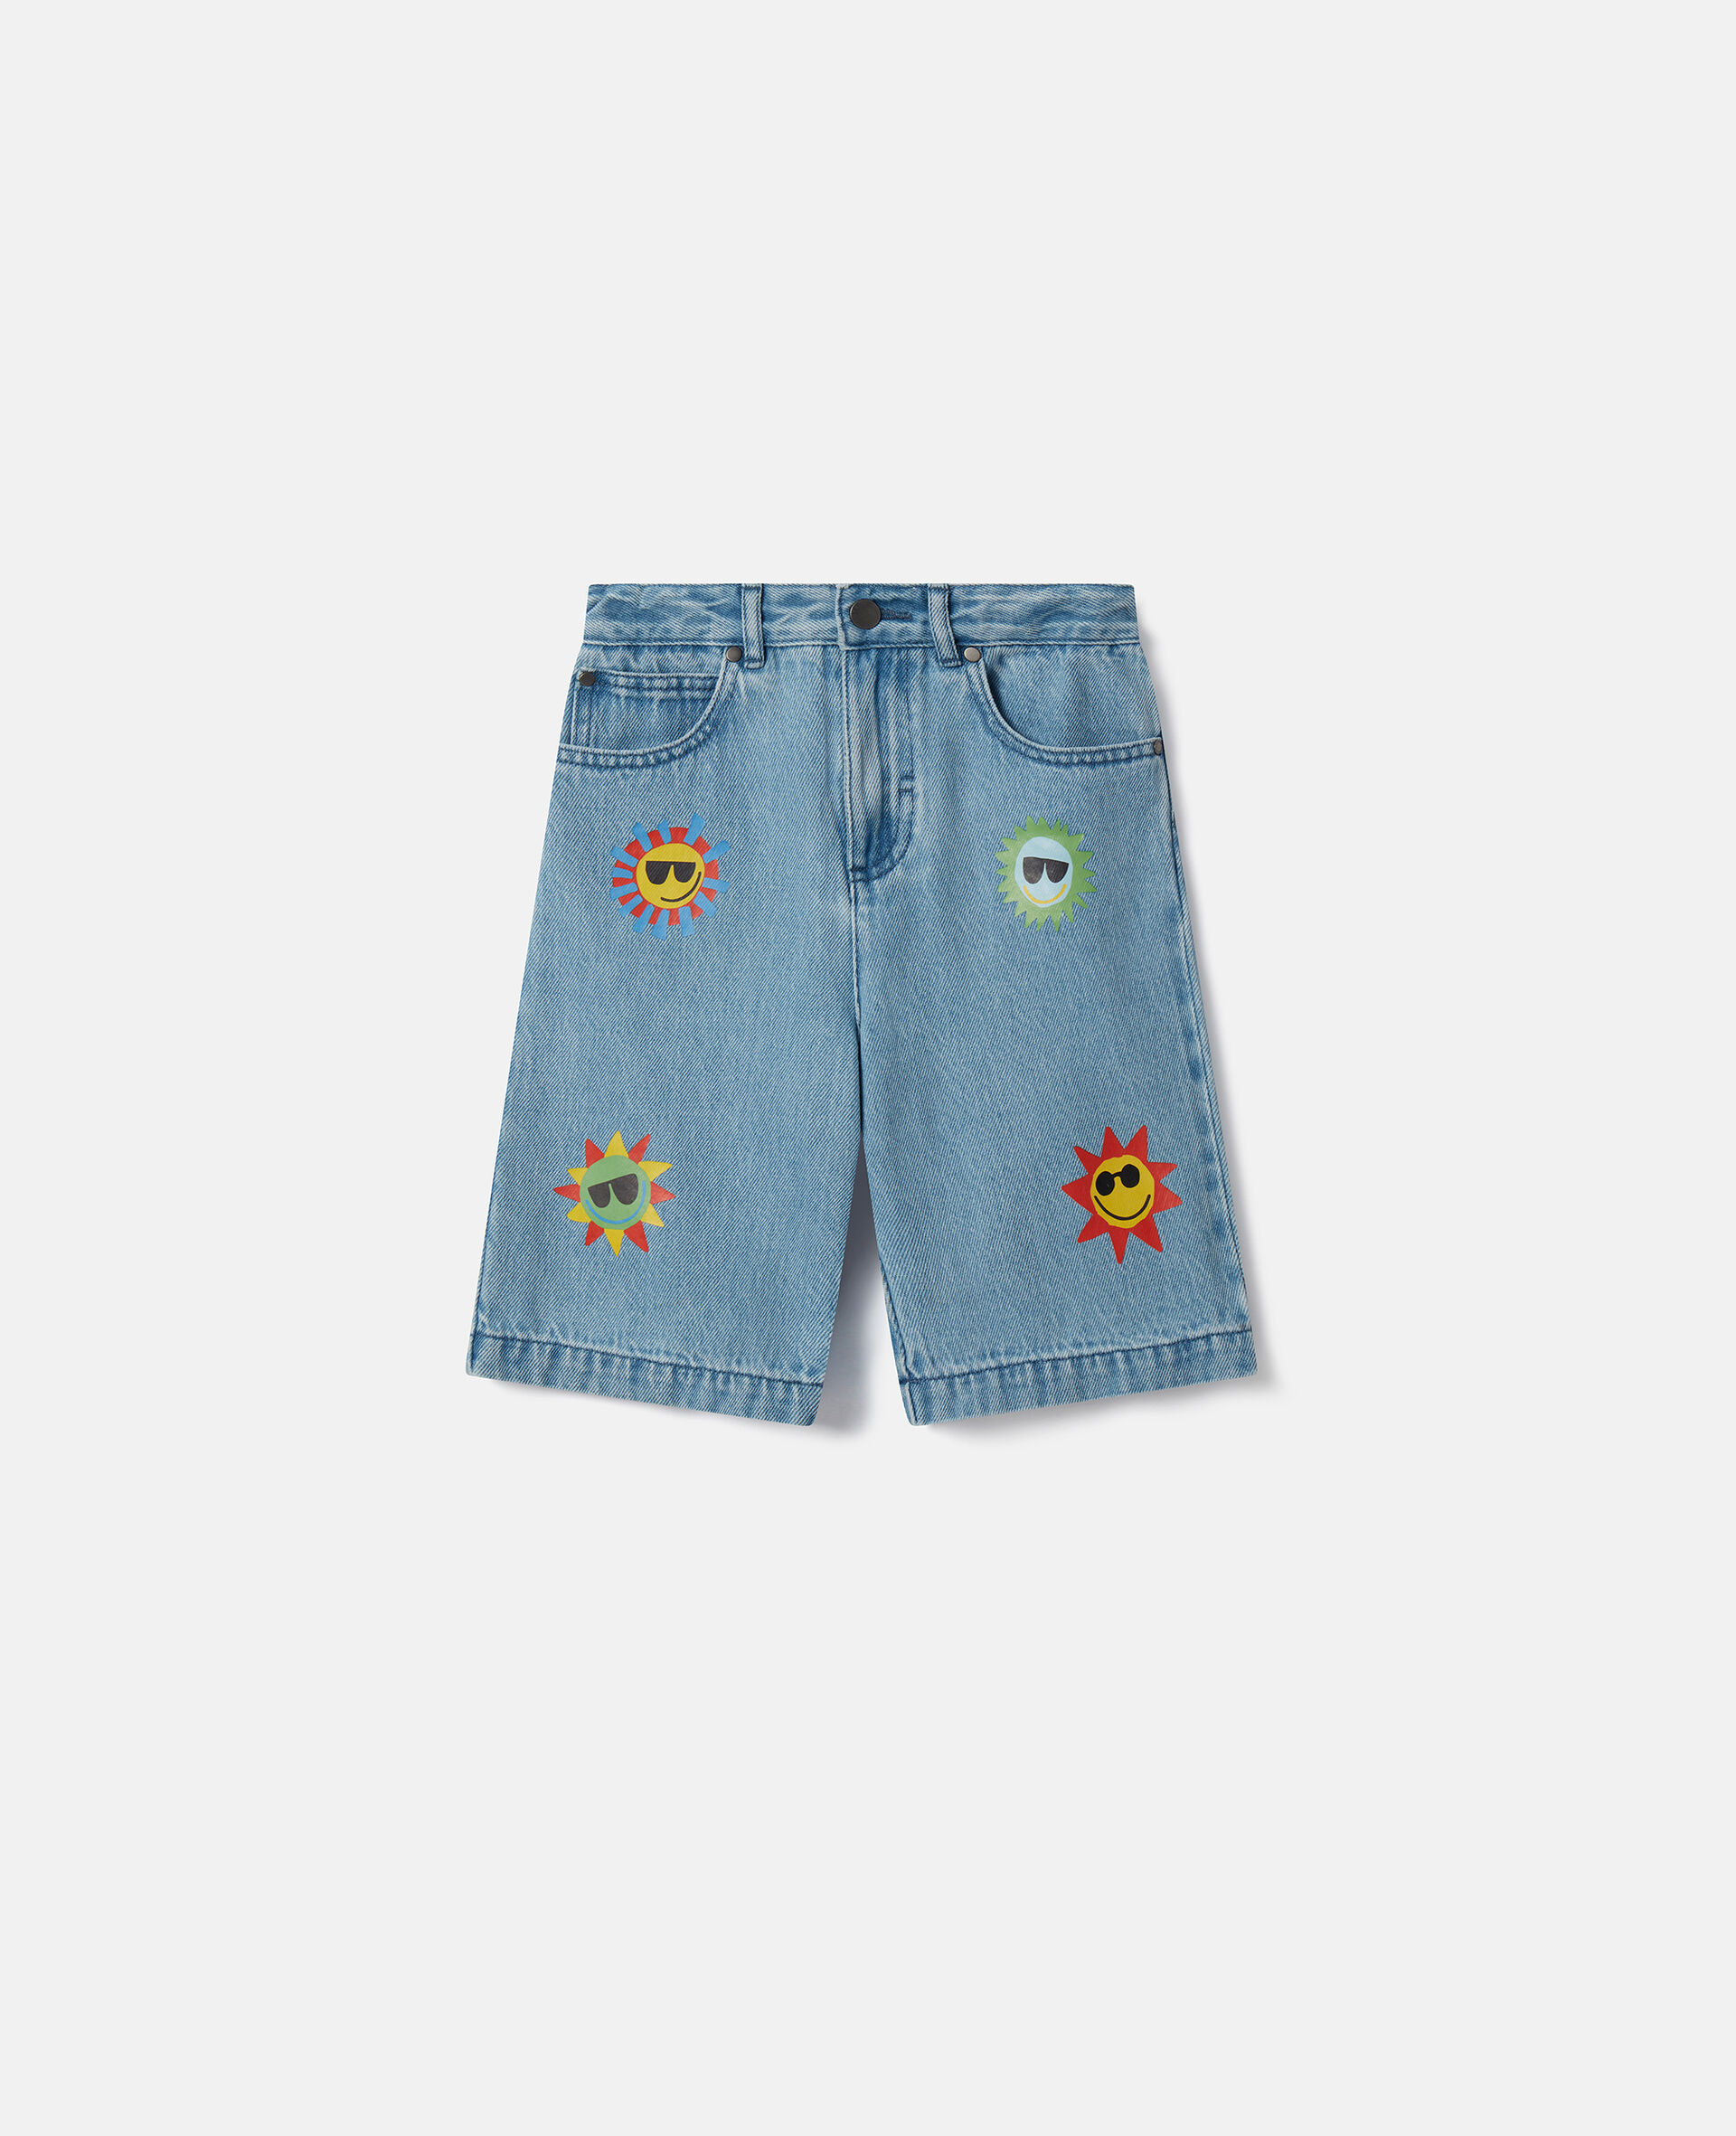 Sunshine Print Denim Shorts-蓝色-model